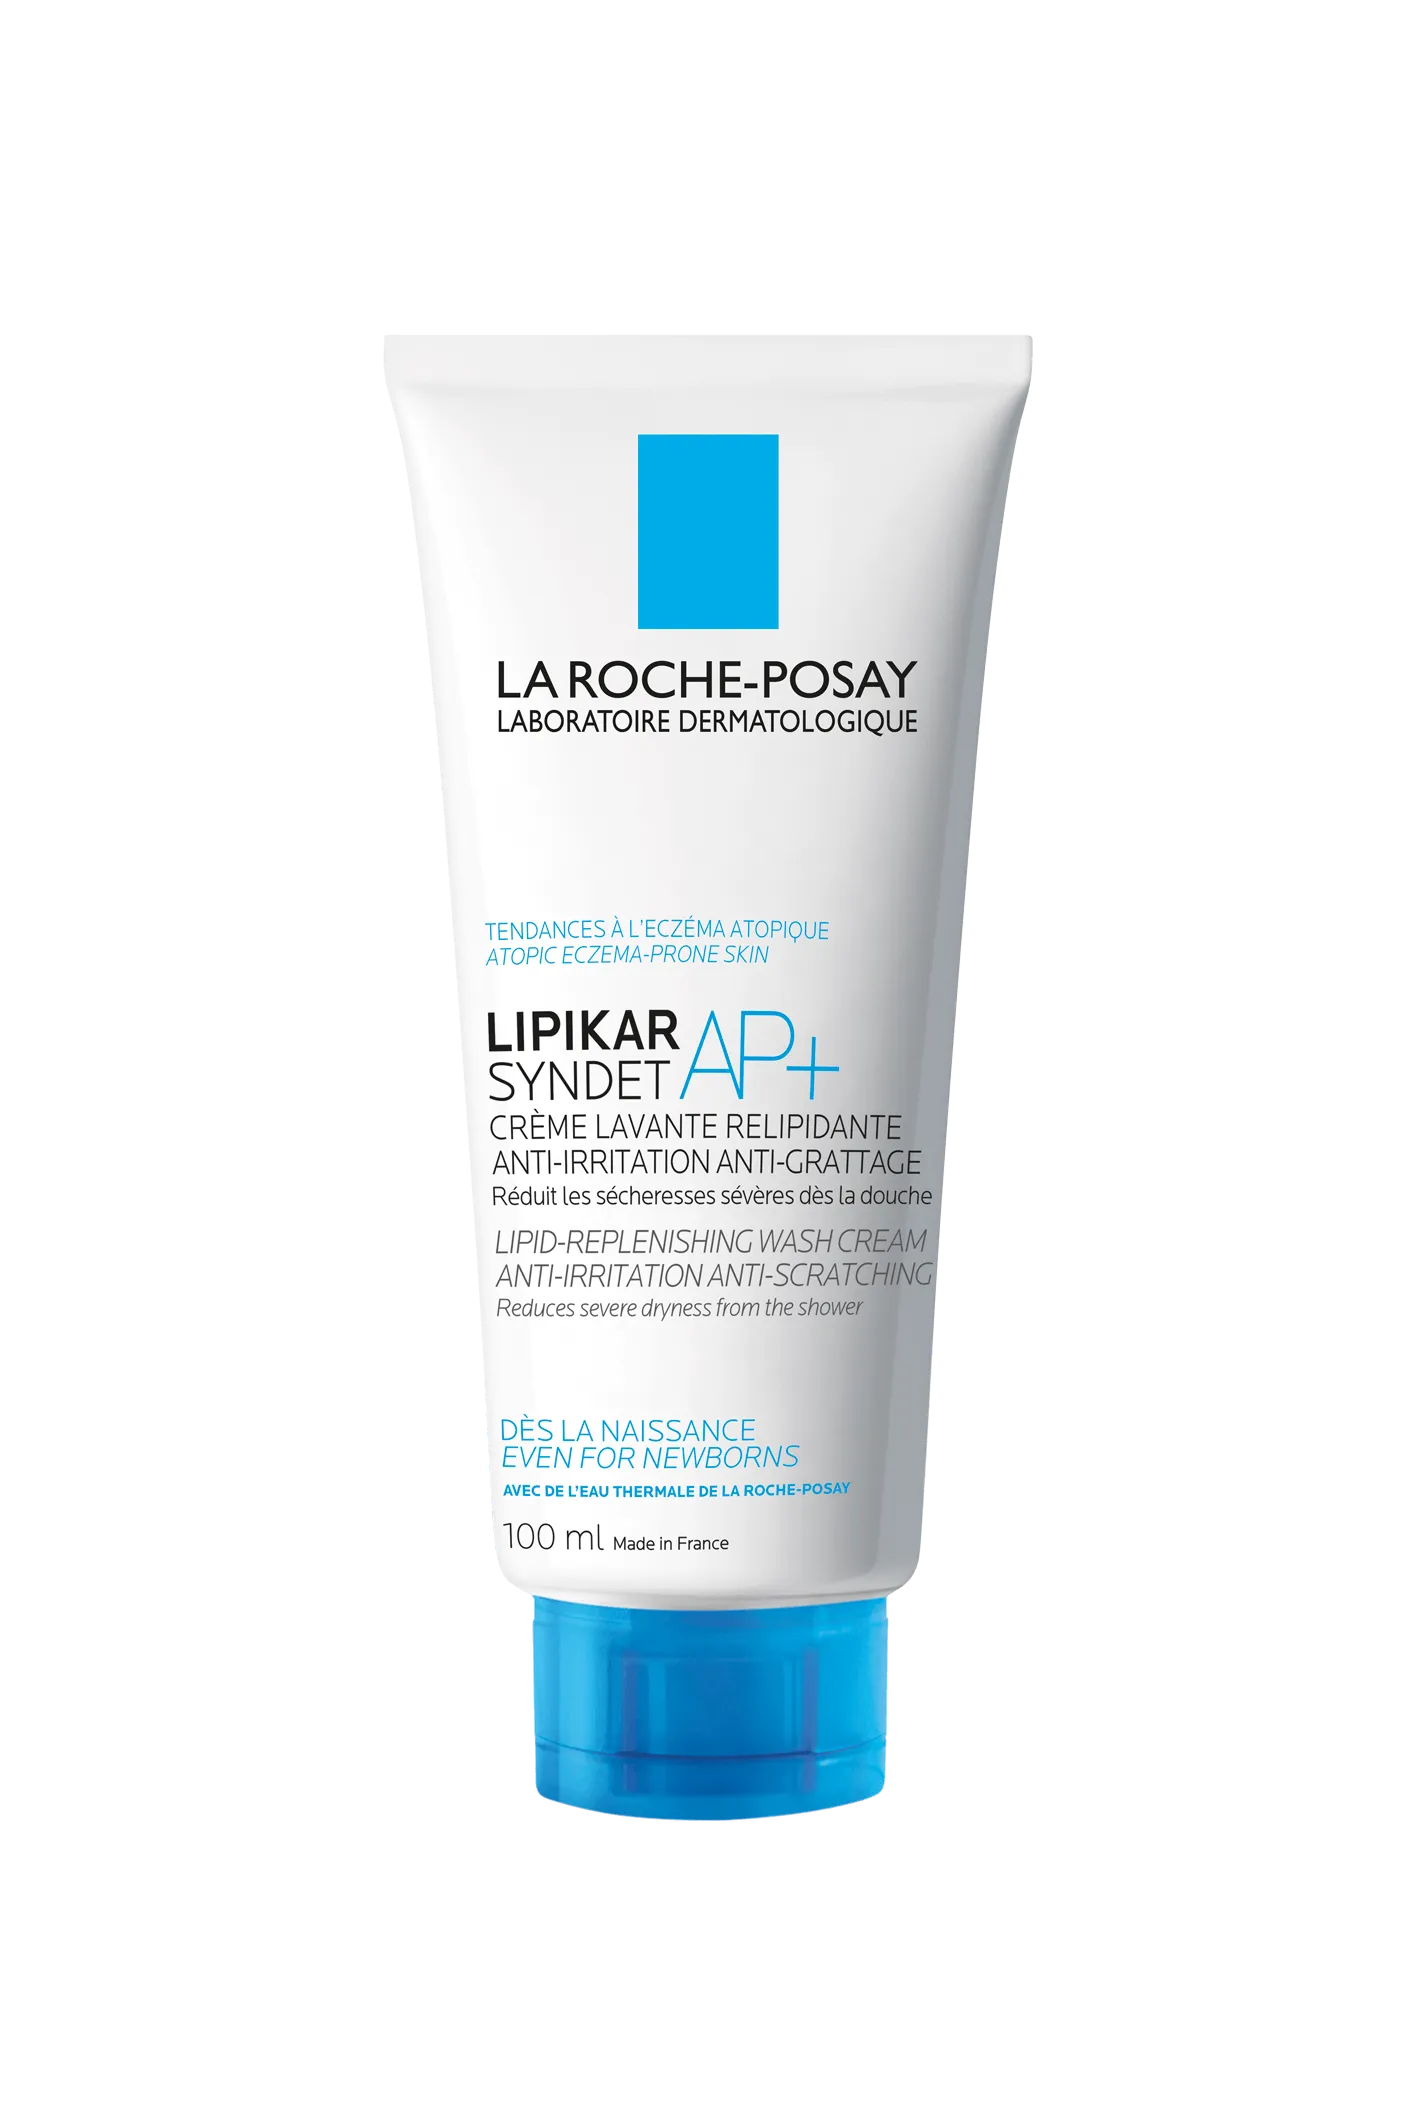 La Roche-Posay Lipikar Syndet AP+, kremowy żel myjący uzupełniający poziom lipidów, 100 ml